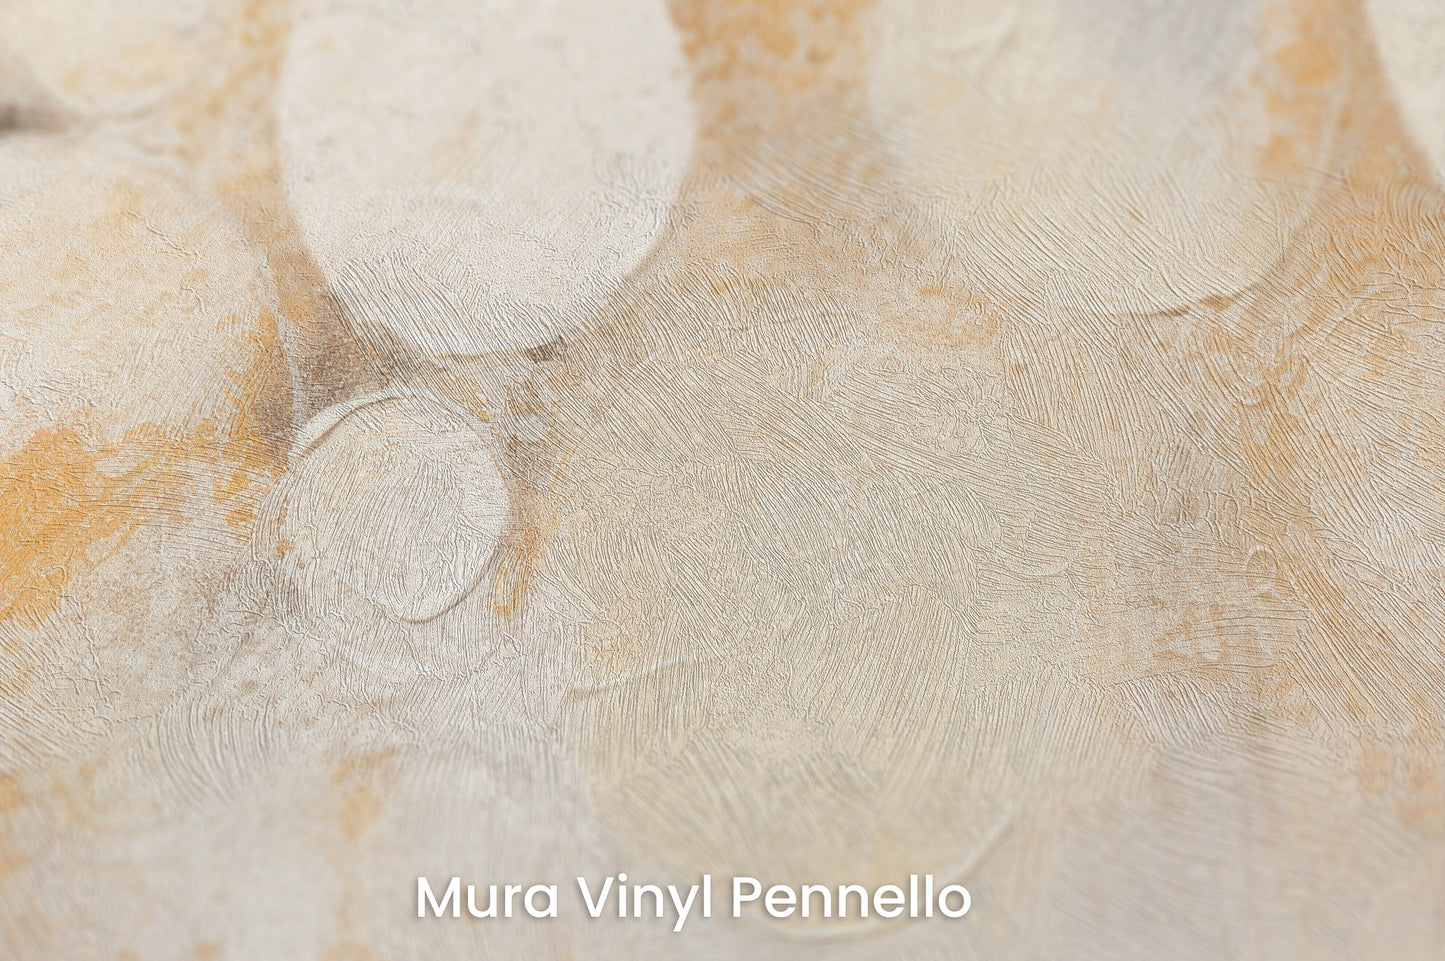 Zbliżenie na artystyczną fototapetę o nazwie LUMINOUS CONSTELLATION na podłożu Mura Vinyl Pennello - faktura pociągnięć pędzla malarskiego.